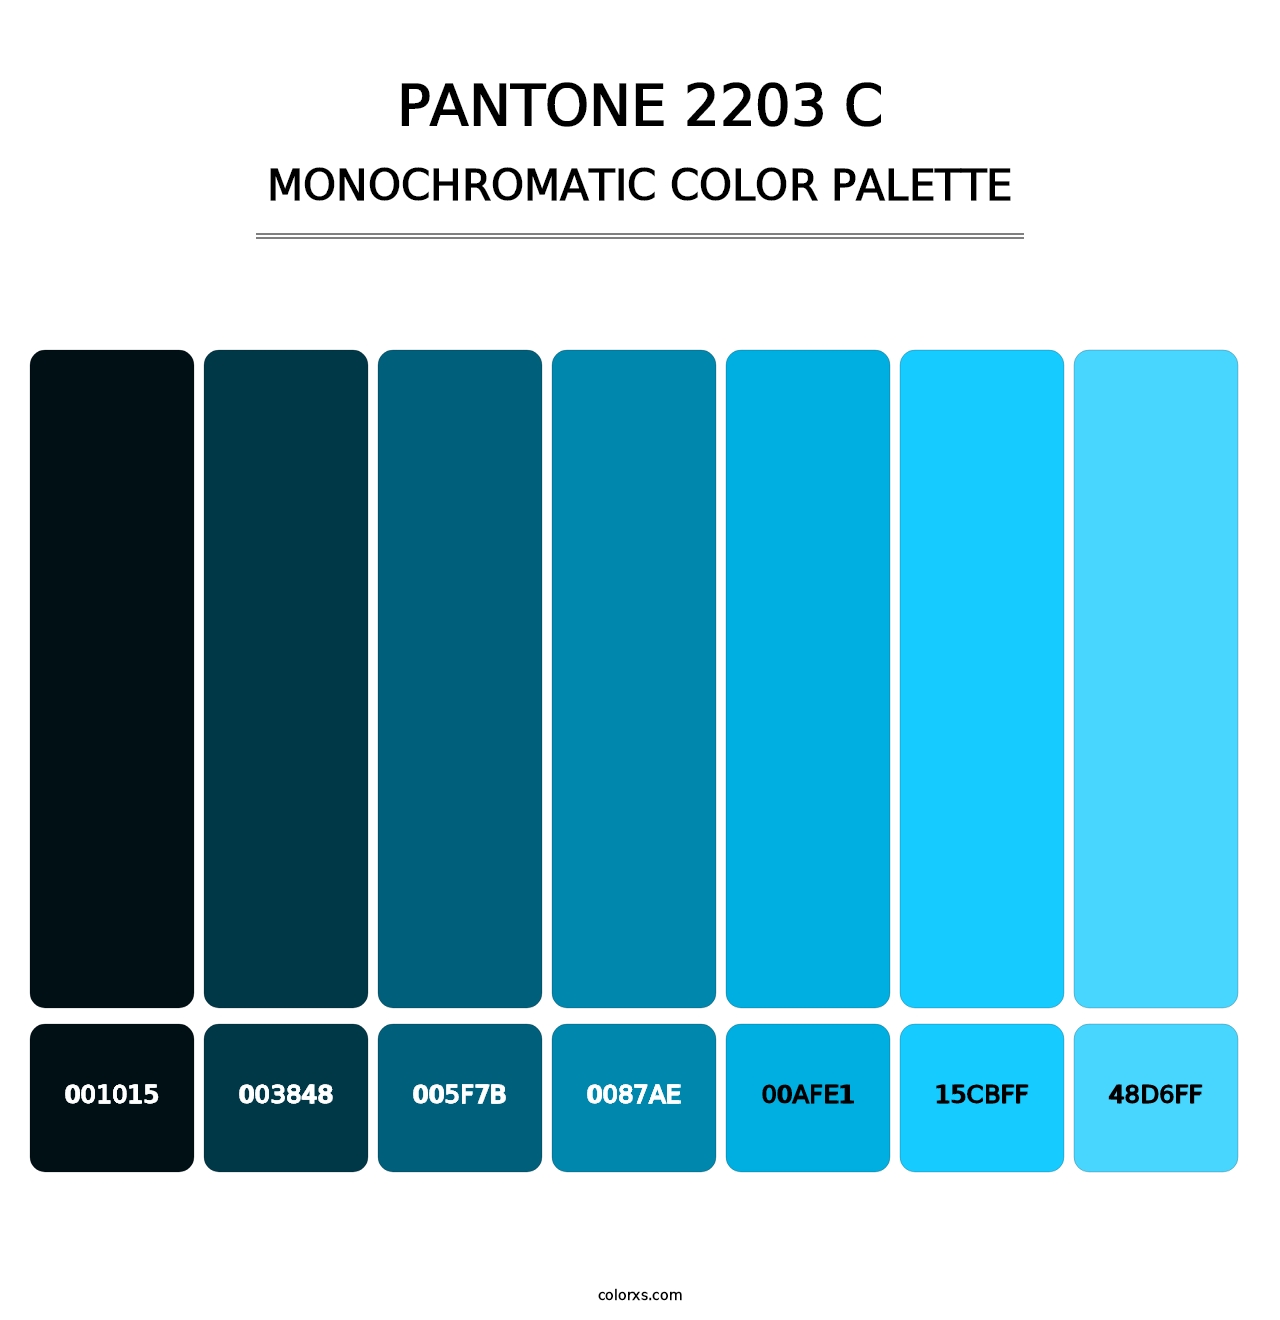 PANTONE 2203 C - Monochromatic Color Palette